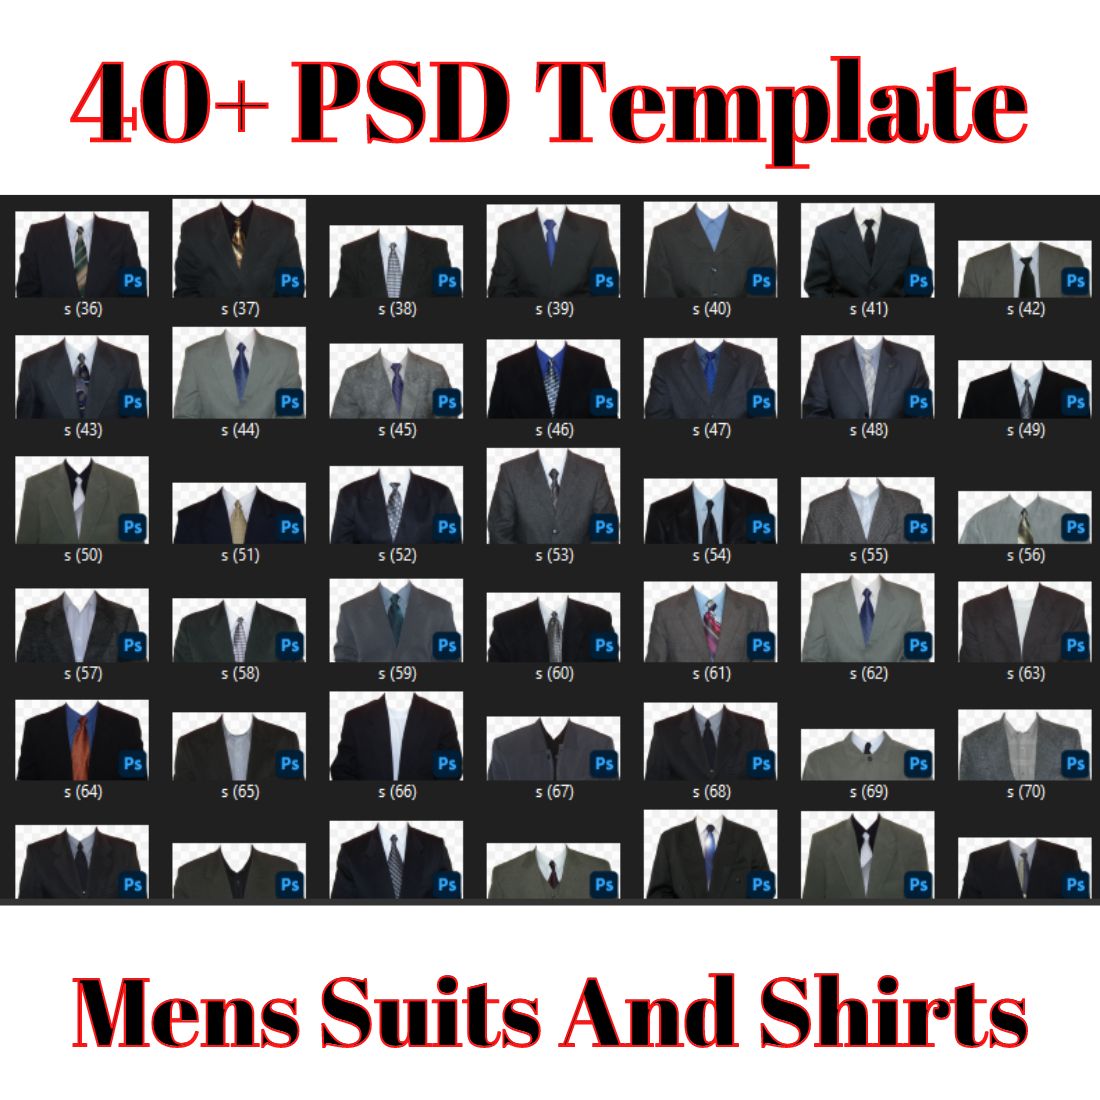 Mens Suits And Shirts PSD Templates Free - MasterBundles